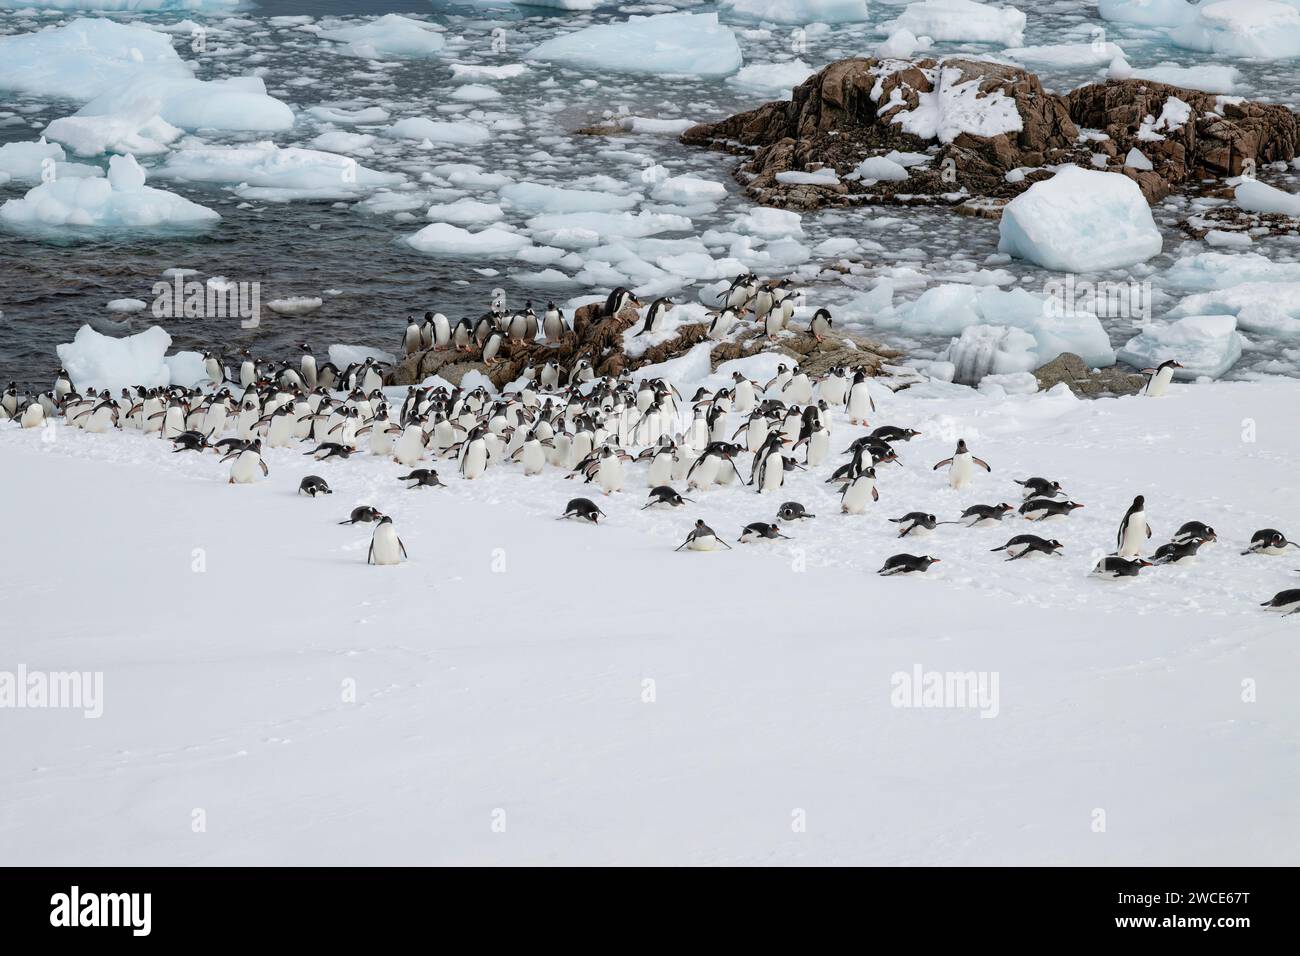 Los pingüinos Gentoo llegan a los criaderos, el puerto de Neko, la Antártida, caminan en la nieve y el hielo para encontrar el lugar de anidación, en la orilla después de salir del agua Foto de stock